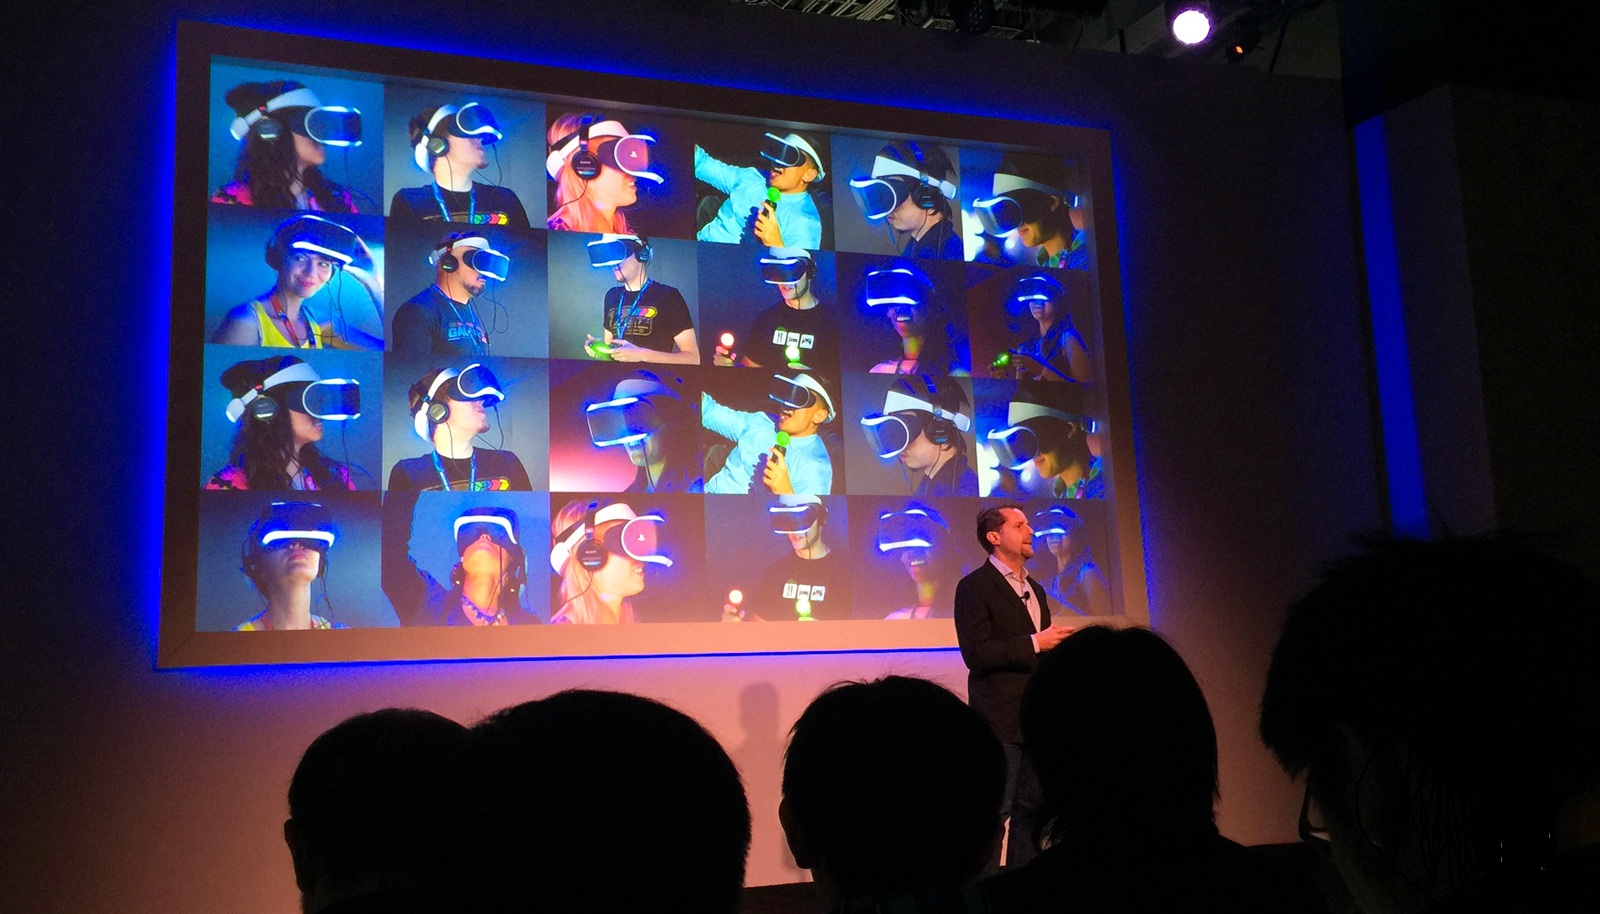 Kính thực tế ảo PlayStation VR rẻ hơn Oculus Rift 200 USD, ra mắt vào tháng 10